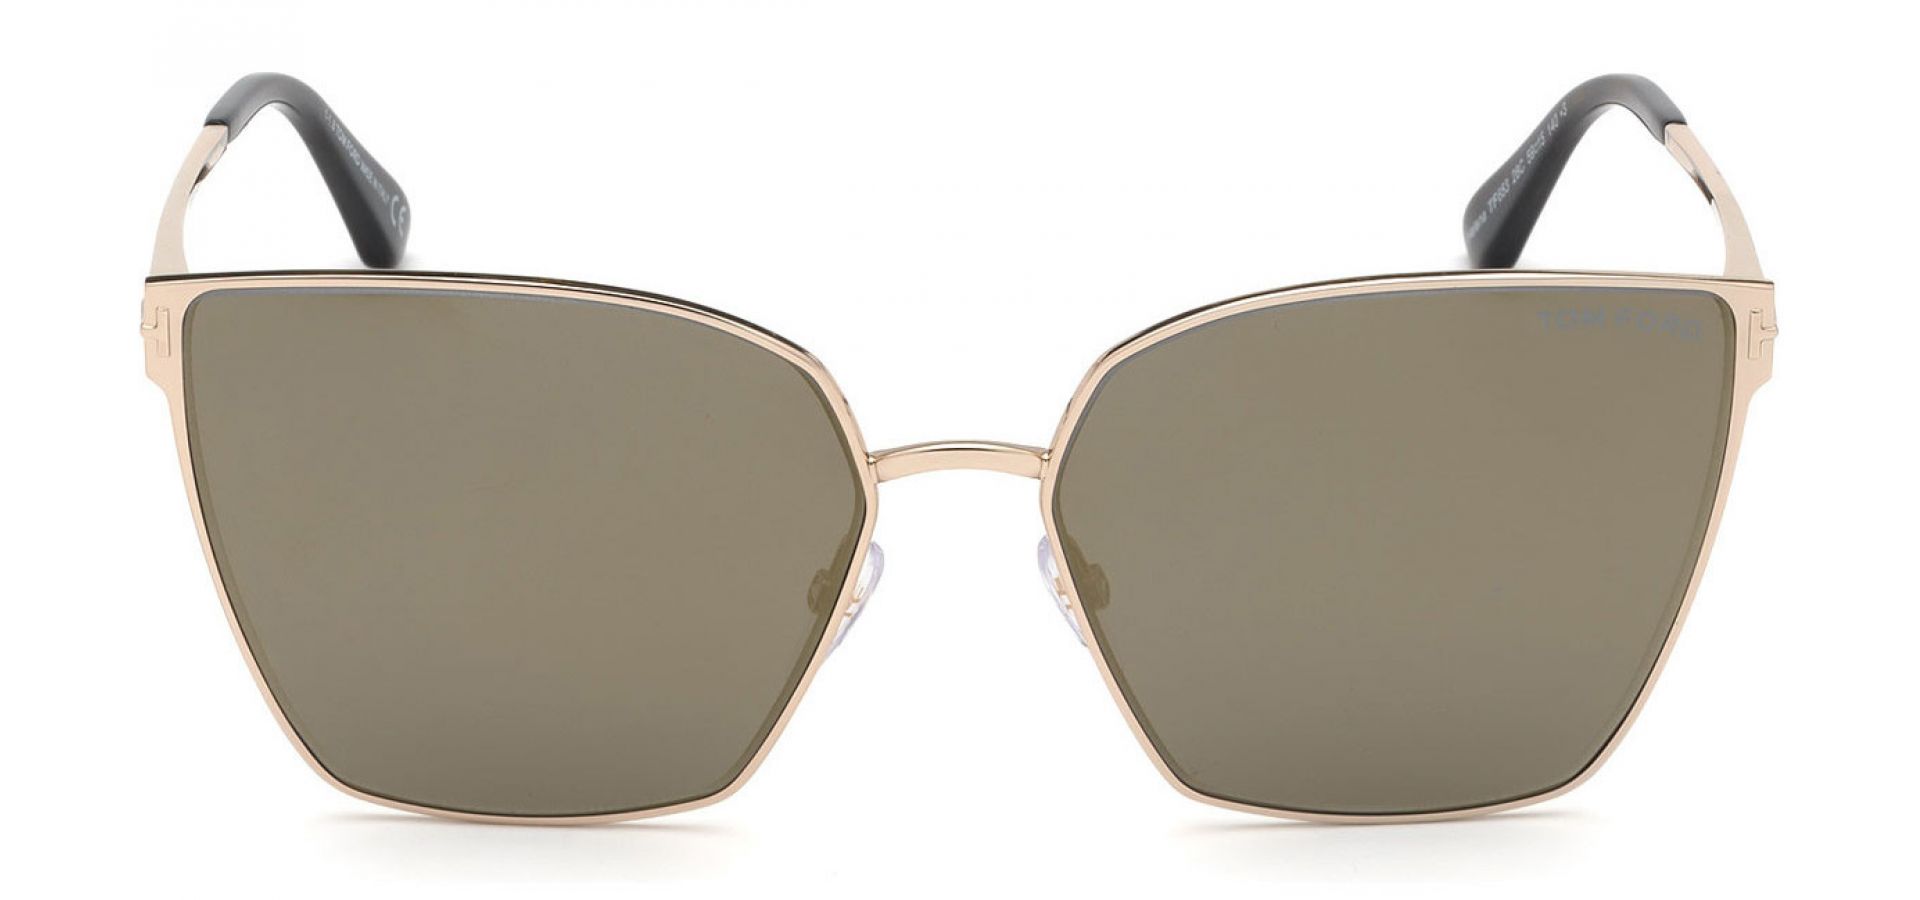 Sončna očala Tom Ford HELENA: Velikost: 59/15/140, Spol: ženska, Material: kovinska